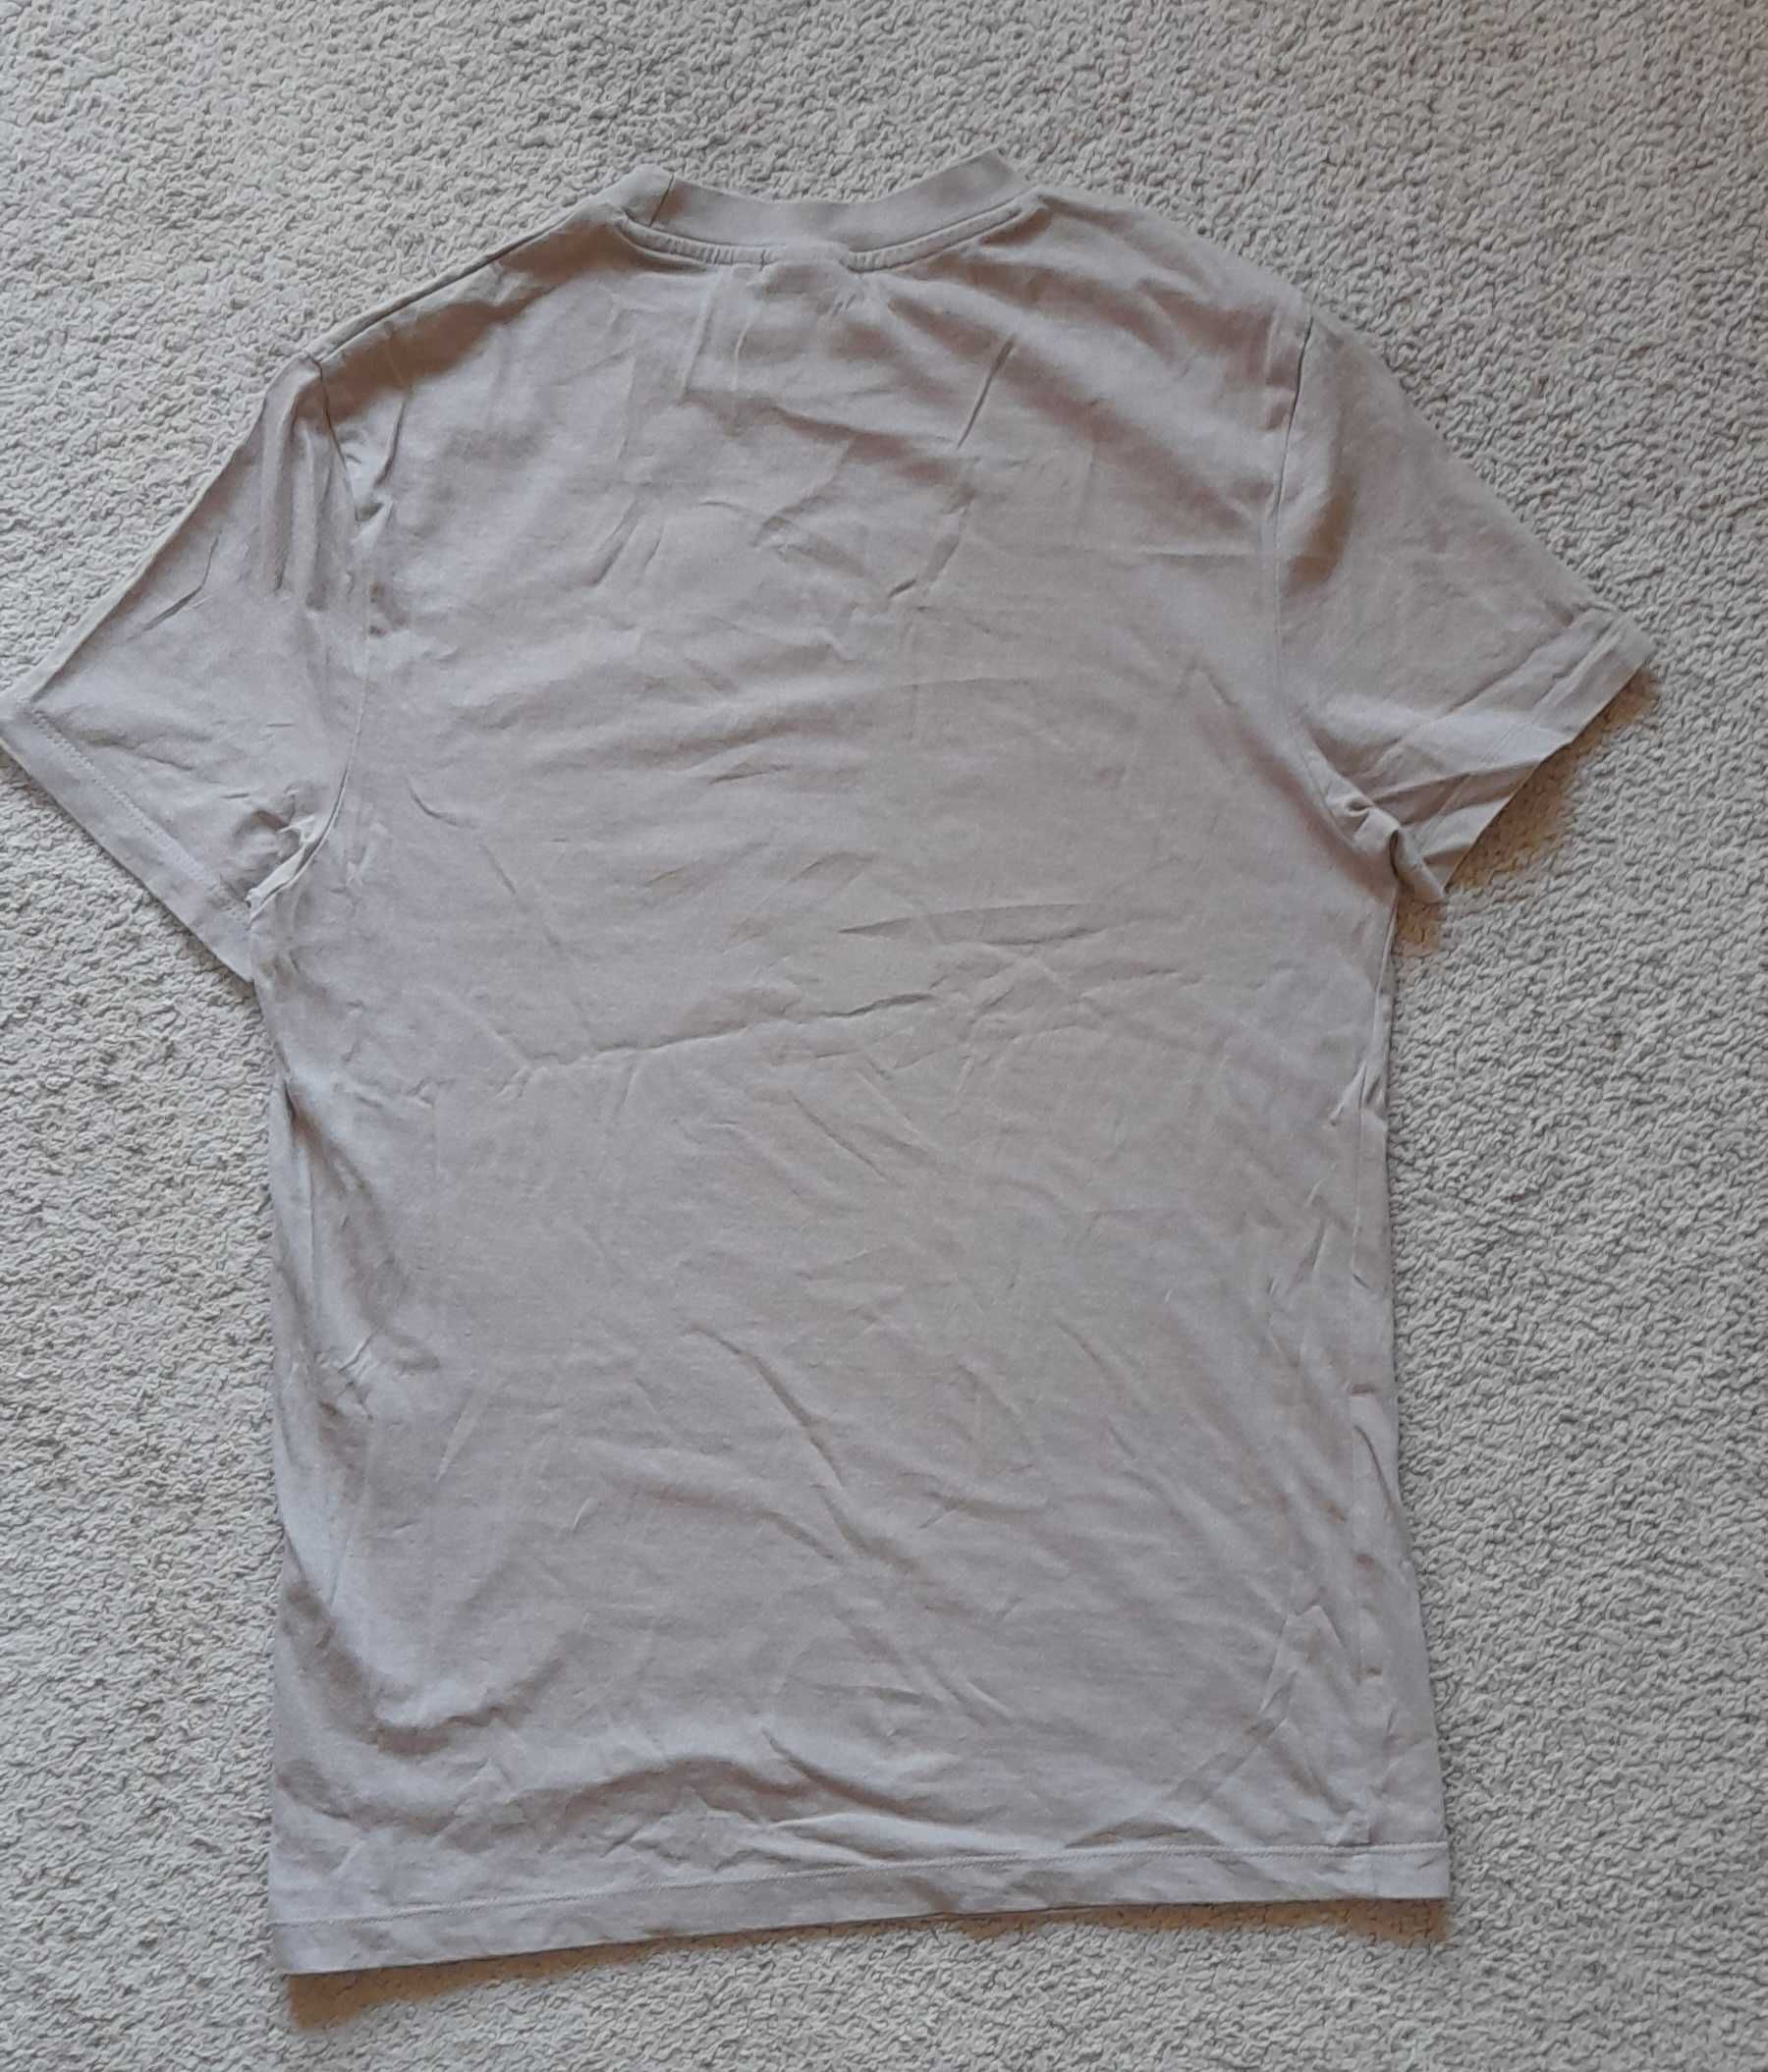 Beżowy/ziemisty t-shirt/ koszulka Asos rozmiar XS